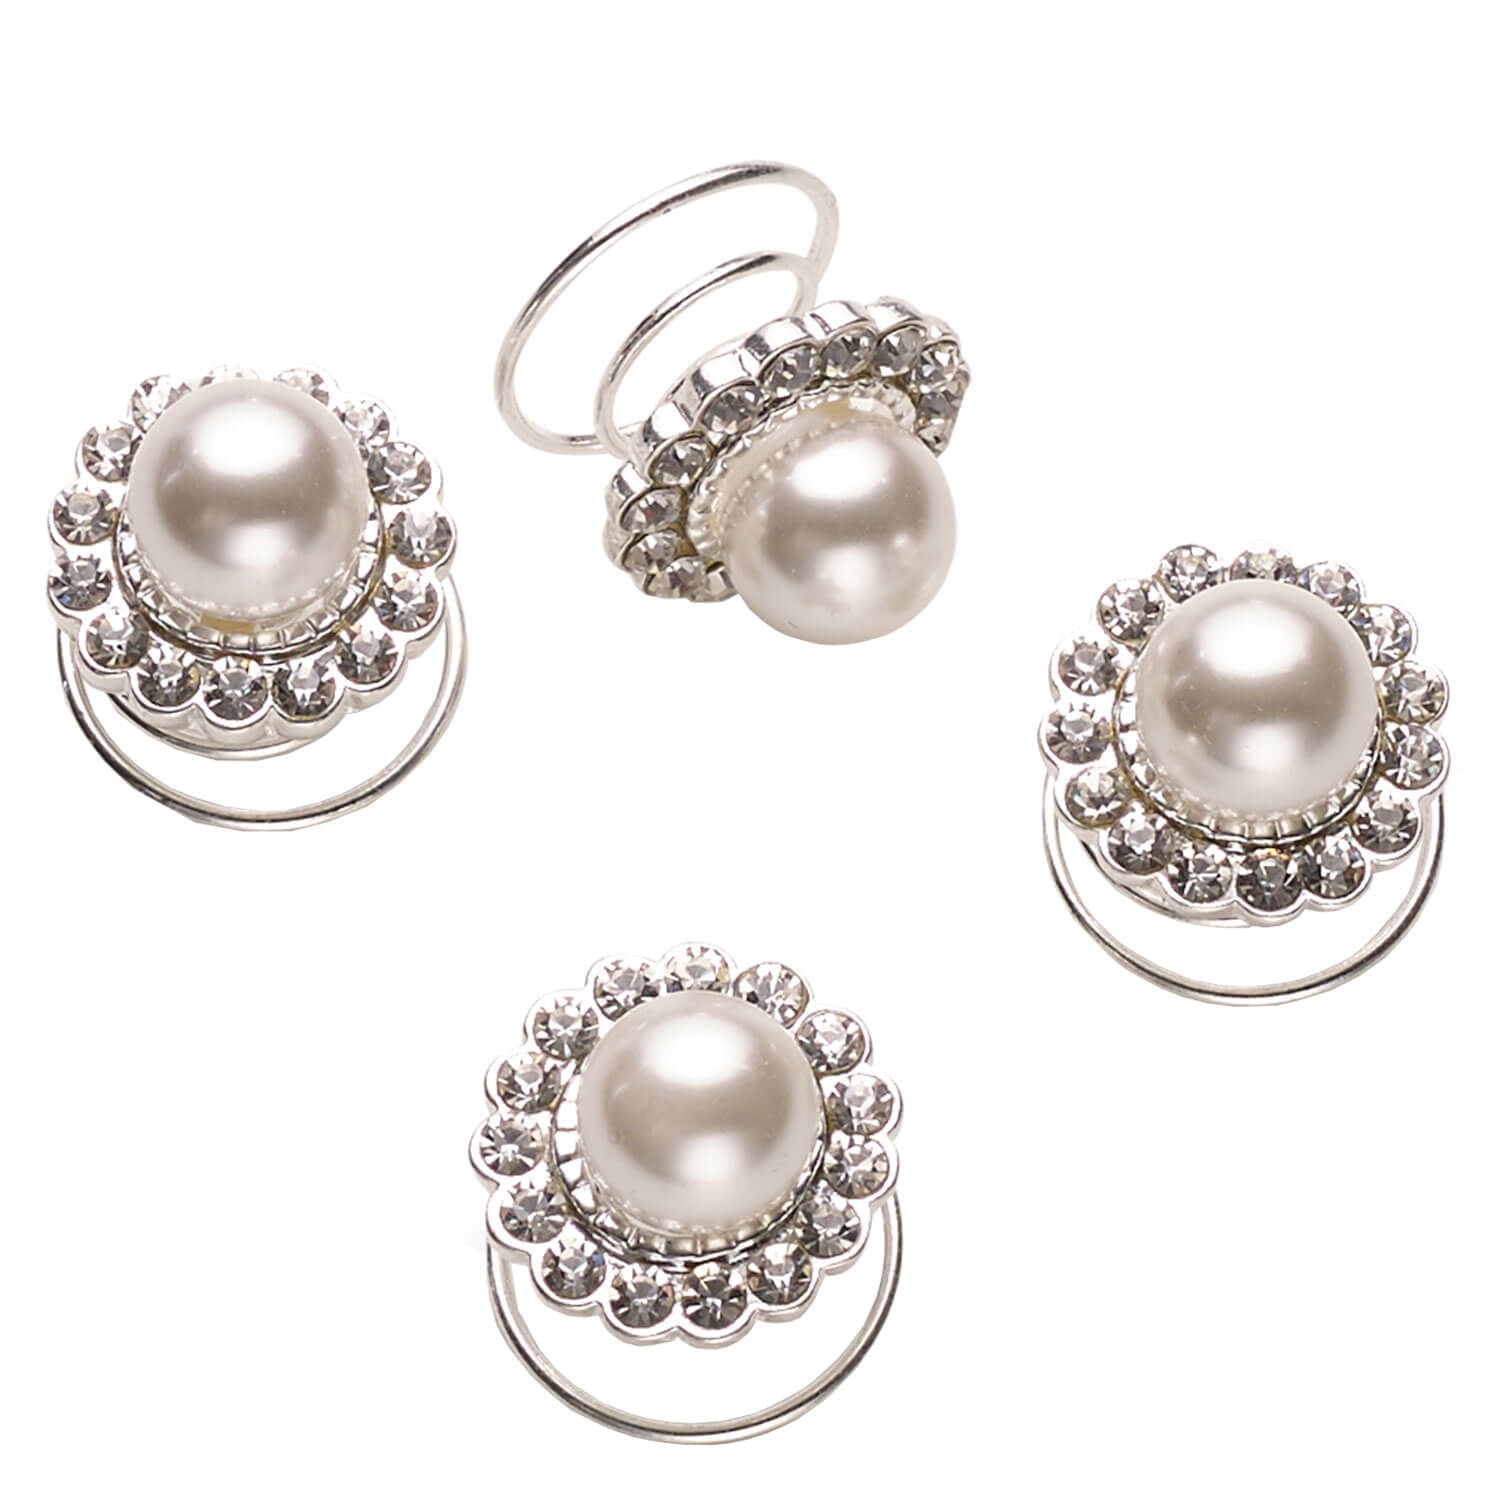 Produktbild von Celebride - Curlies Mit Perlen Und Strasssteinchen